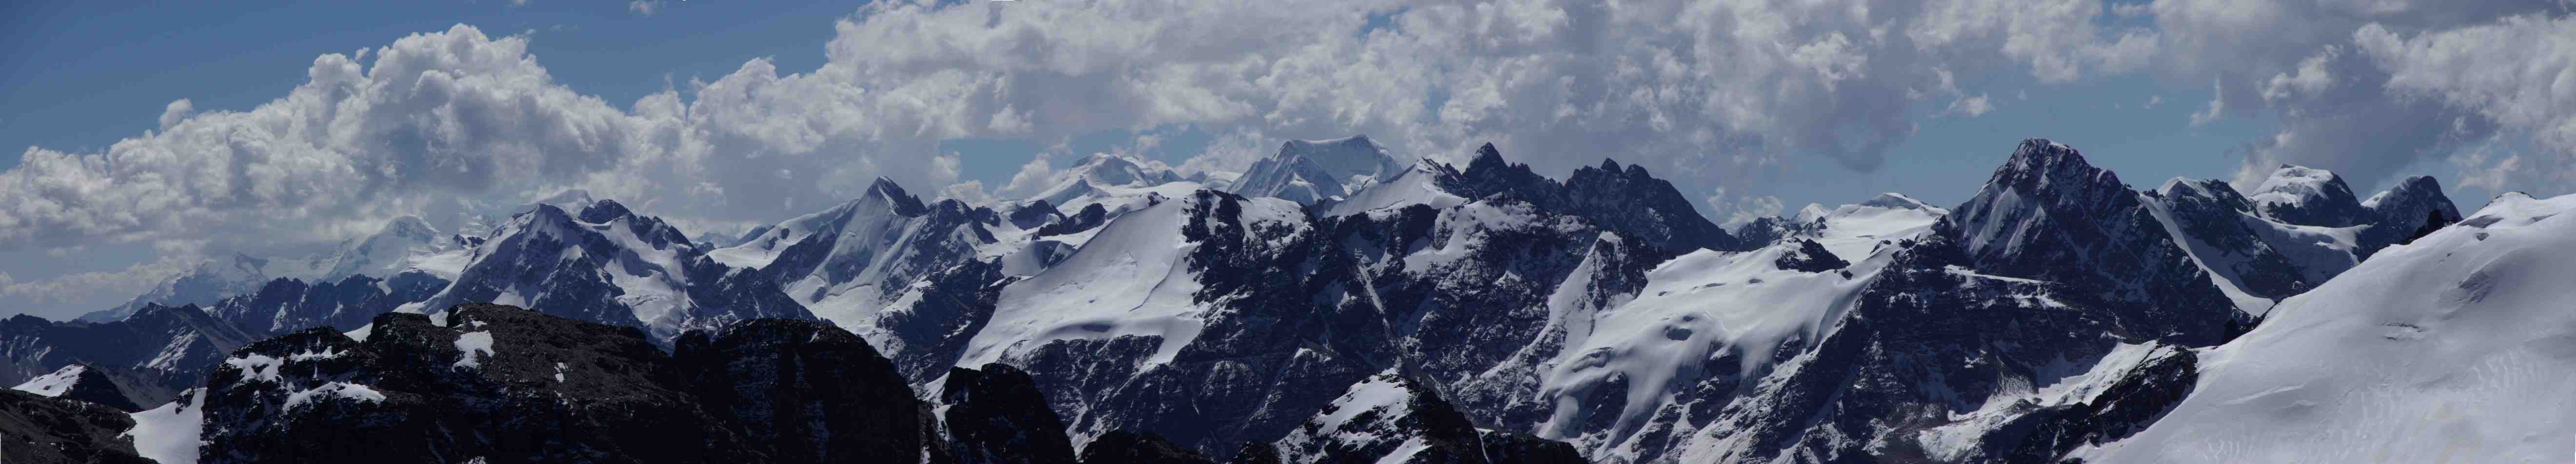 Panorama depuis le pic des Autrichiens (5342 m), le 11 août 2008. De gauche à droite, au-dessus des rochers qui constituent l’épaule du Janchallani et au loin (sous les nuages), le Nevado Piramide (5907 m) à gauche, le Haucana (6200 m) et le Jankhouma (6427 m) ; ensuite à droite de l’épaule du Janchallani, la montagne pointue est le Pakokiuta (5589 m). Toujours vers la droite, une montagne de forme un peu circulaire avec une arête oblique devant, c’est le Chachacomani (6074 m). La montagne qui apparaît plate à droite du Chachacomani est le Jallawaya (5670 m). 
Plus proche de nous ensuite, une montagne avec un sommet neigeux pentu et une corniche qui redescend vers la gauche : c’est le Katanani (5468 m). Les pics sur sa droite font partie du massif du Negruni. Tout à fait à droite, le sommet également neigeux avec une pente de neige face à nous : il fait aussi partie du massif du Negruni, altitude 5868 m, c’est lui qu’on apercevait deux jours plus tôt 
pendant la descente du col Cumbre Mollo. Les montagnes tout à fait à droite n’ont pas été identifiées, avant la pente de neige qui fait partie du Ventanani.